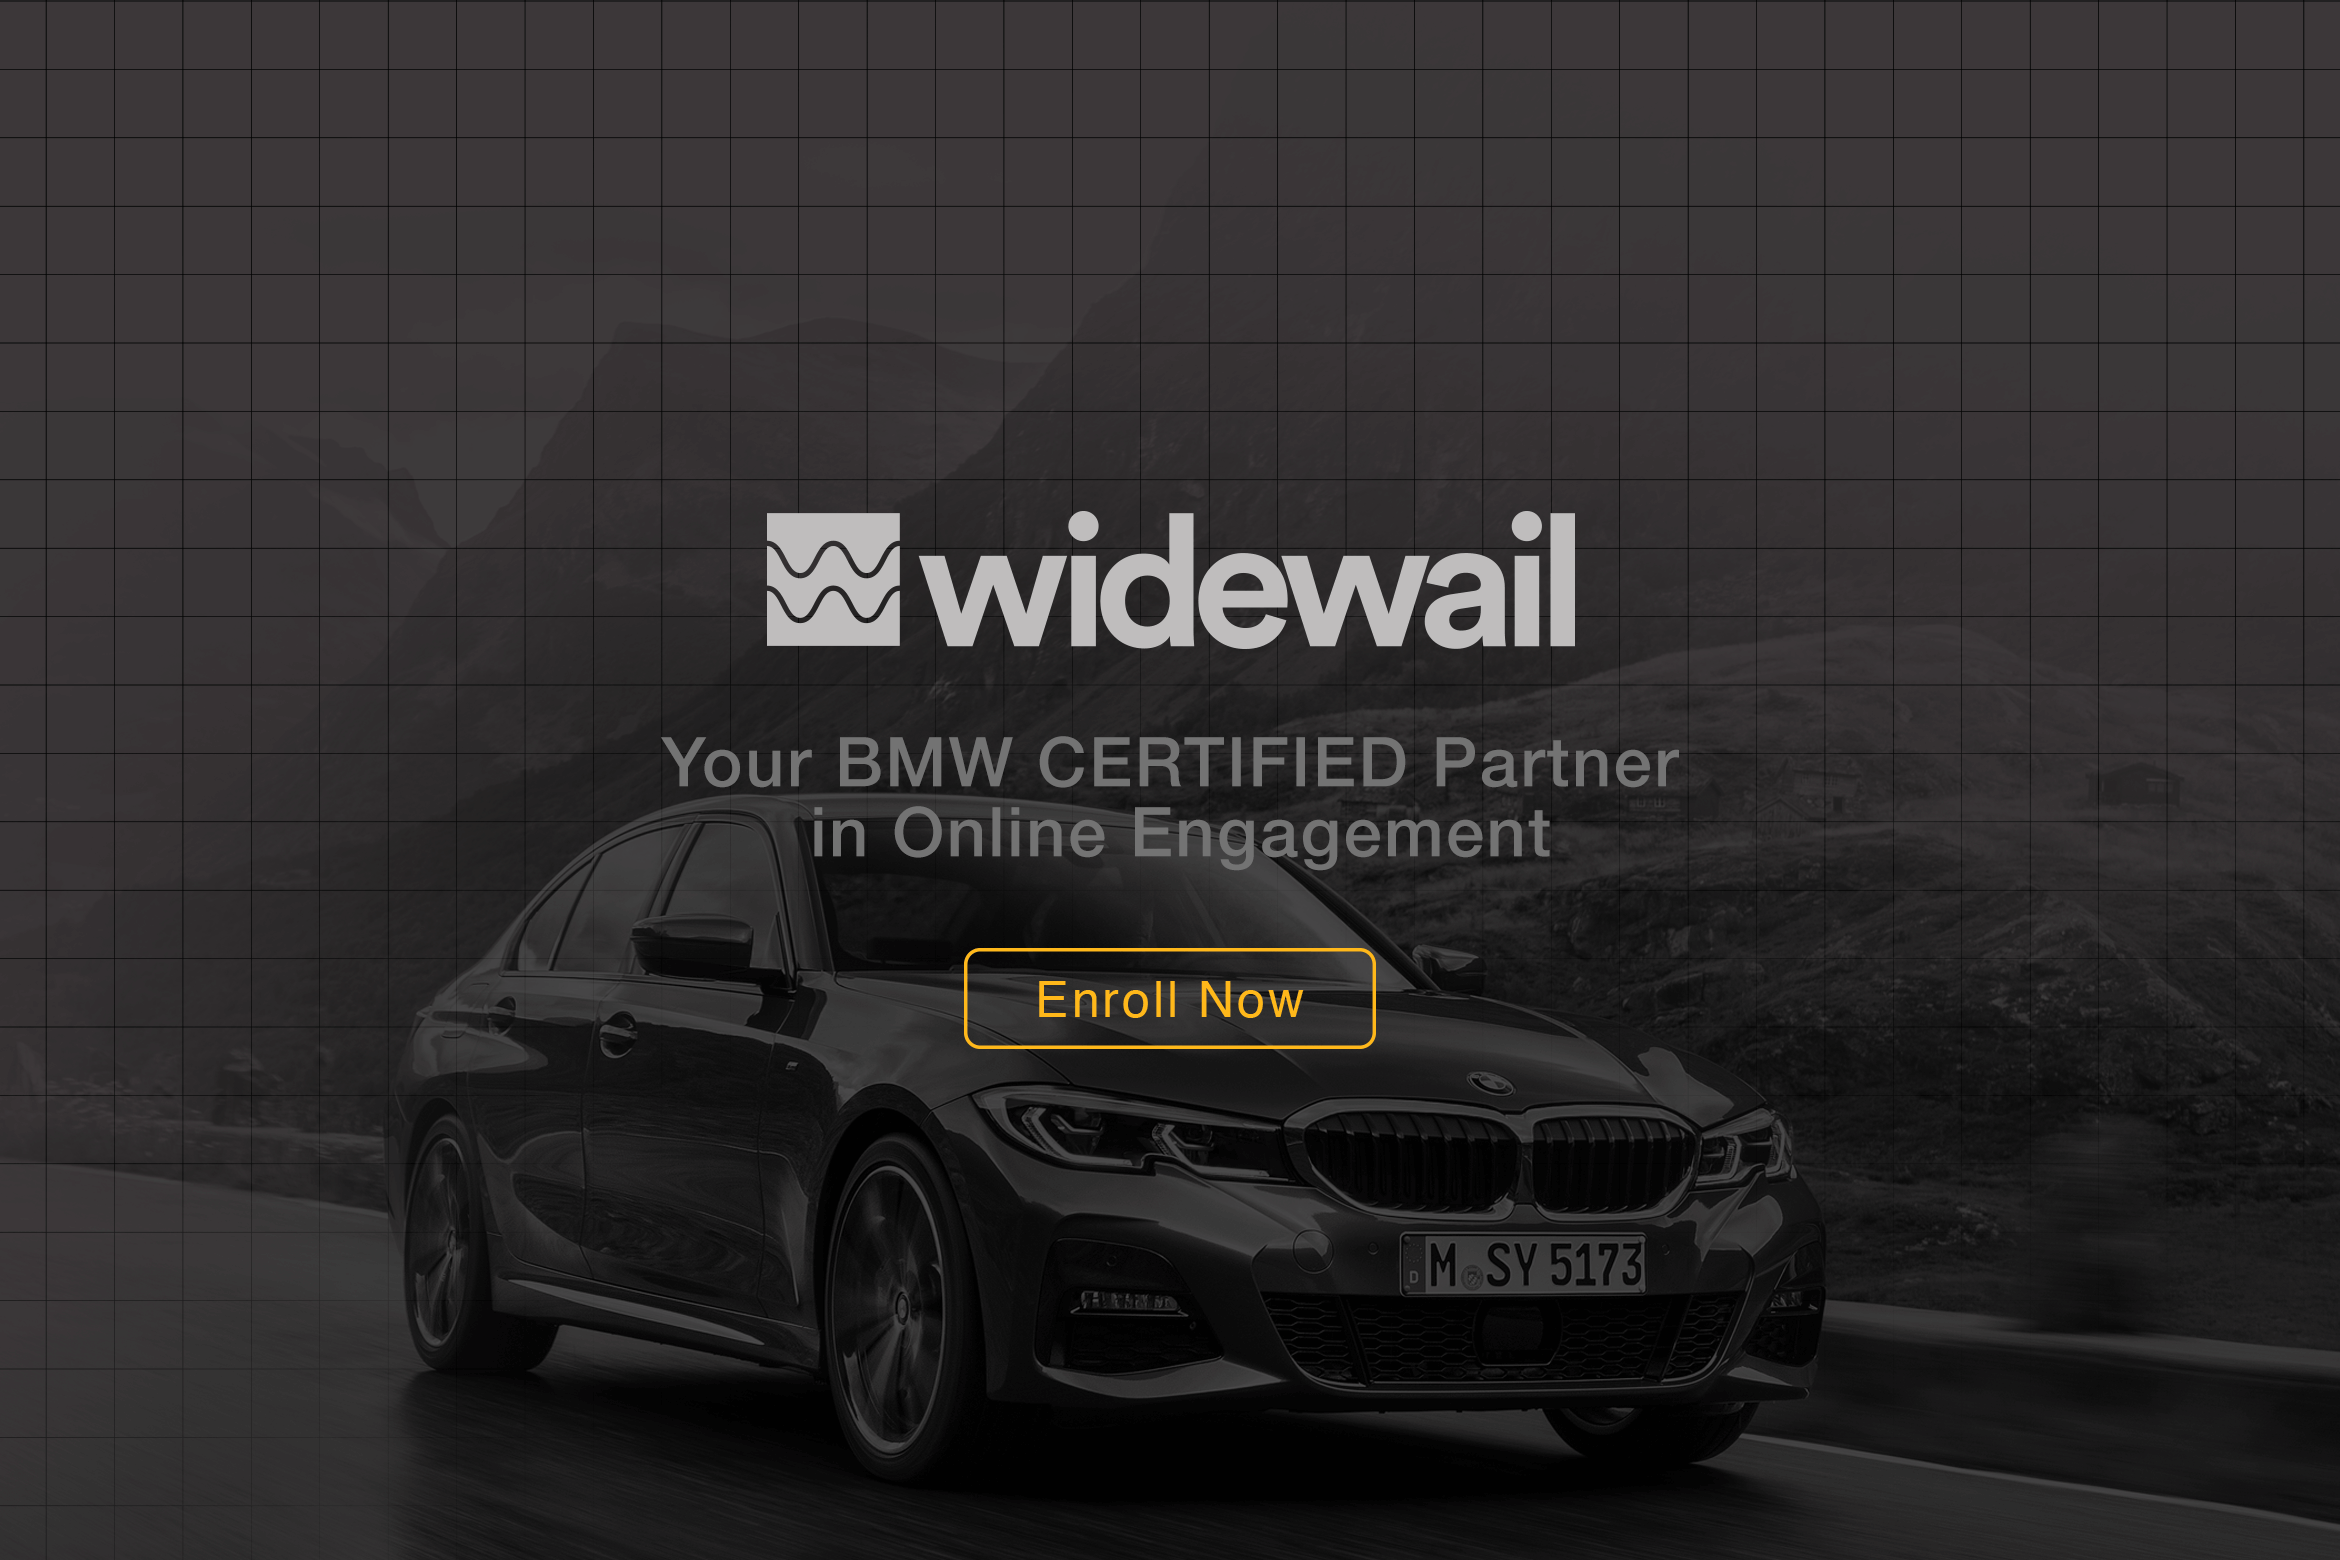 Widewail_BMW_1170x780x2